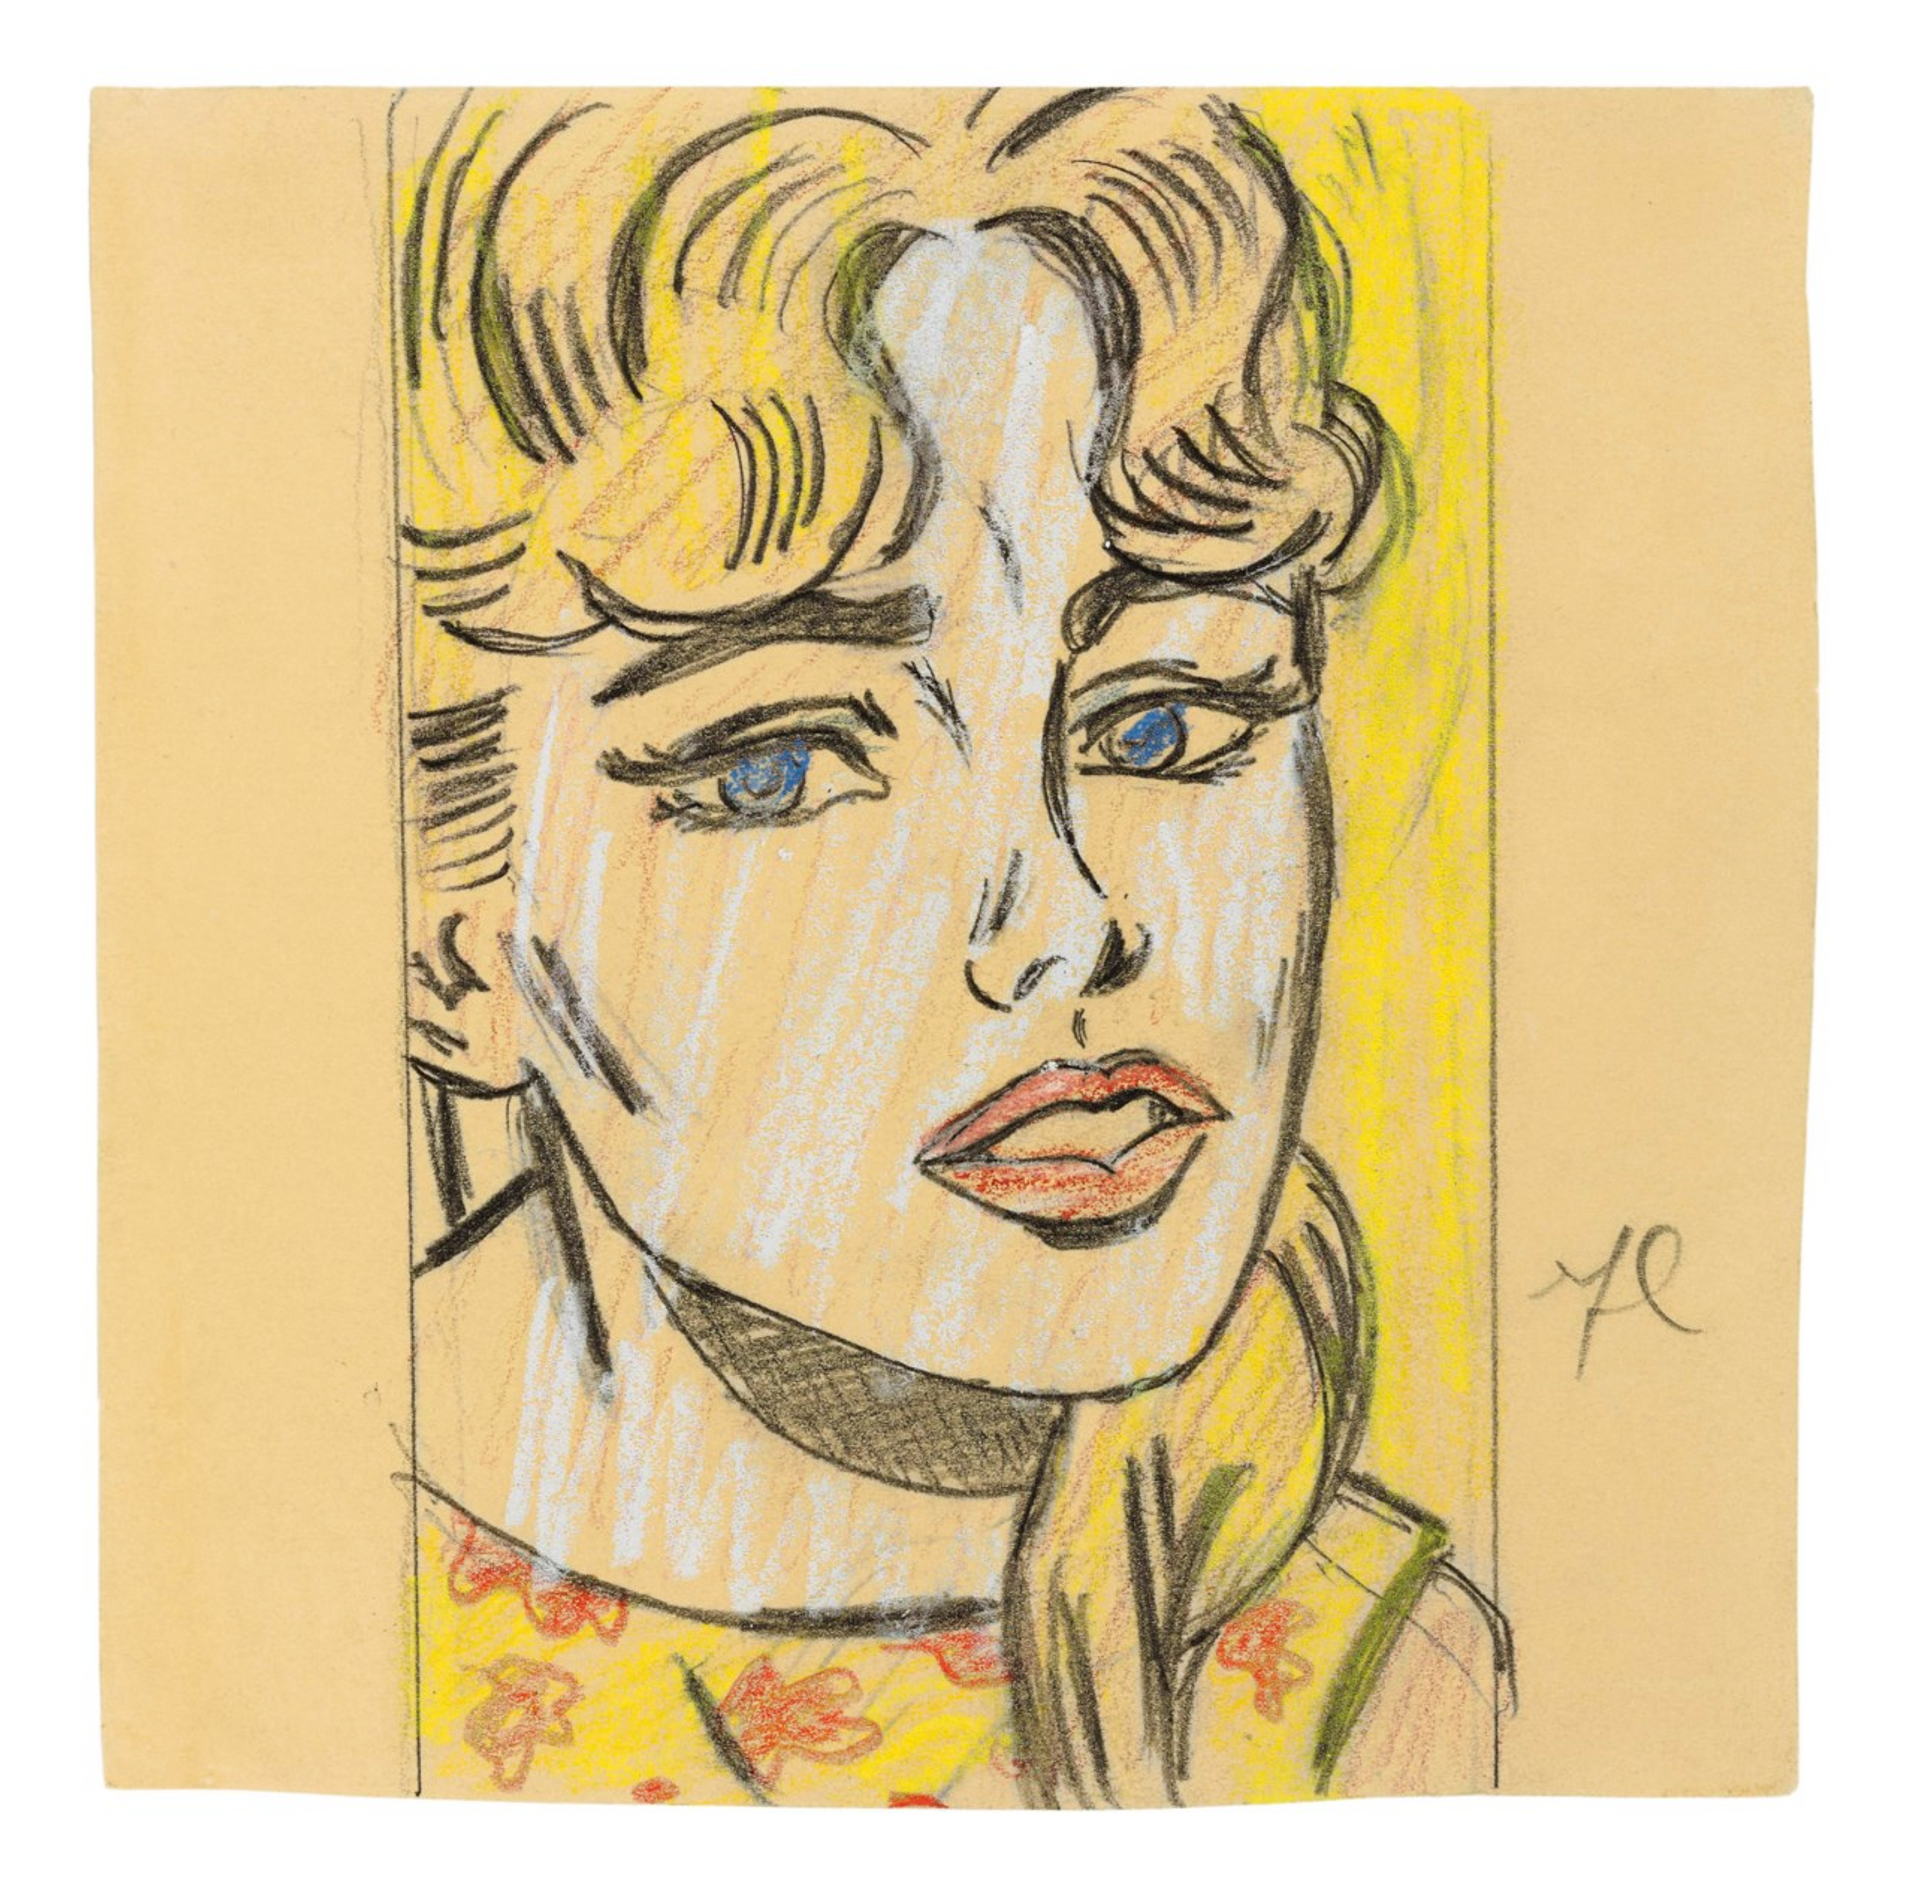 Anxious Girl (study) by Roy Lichtenstein 